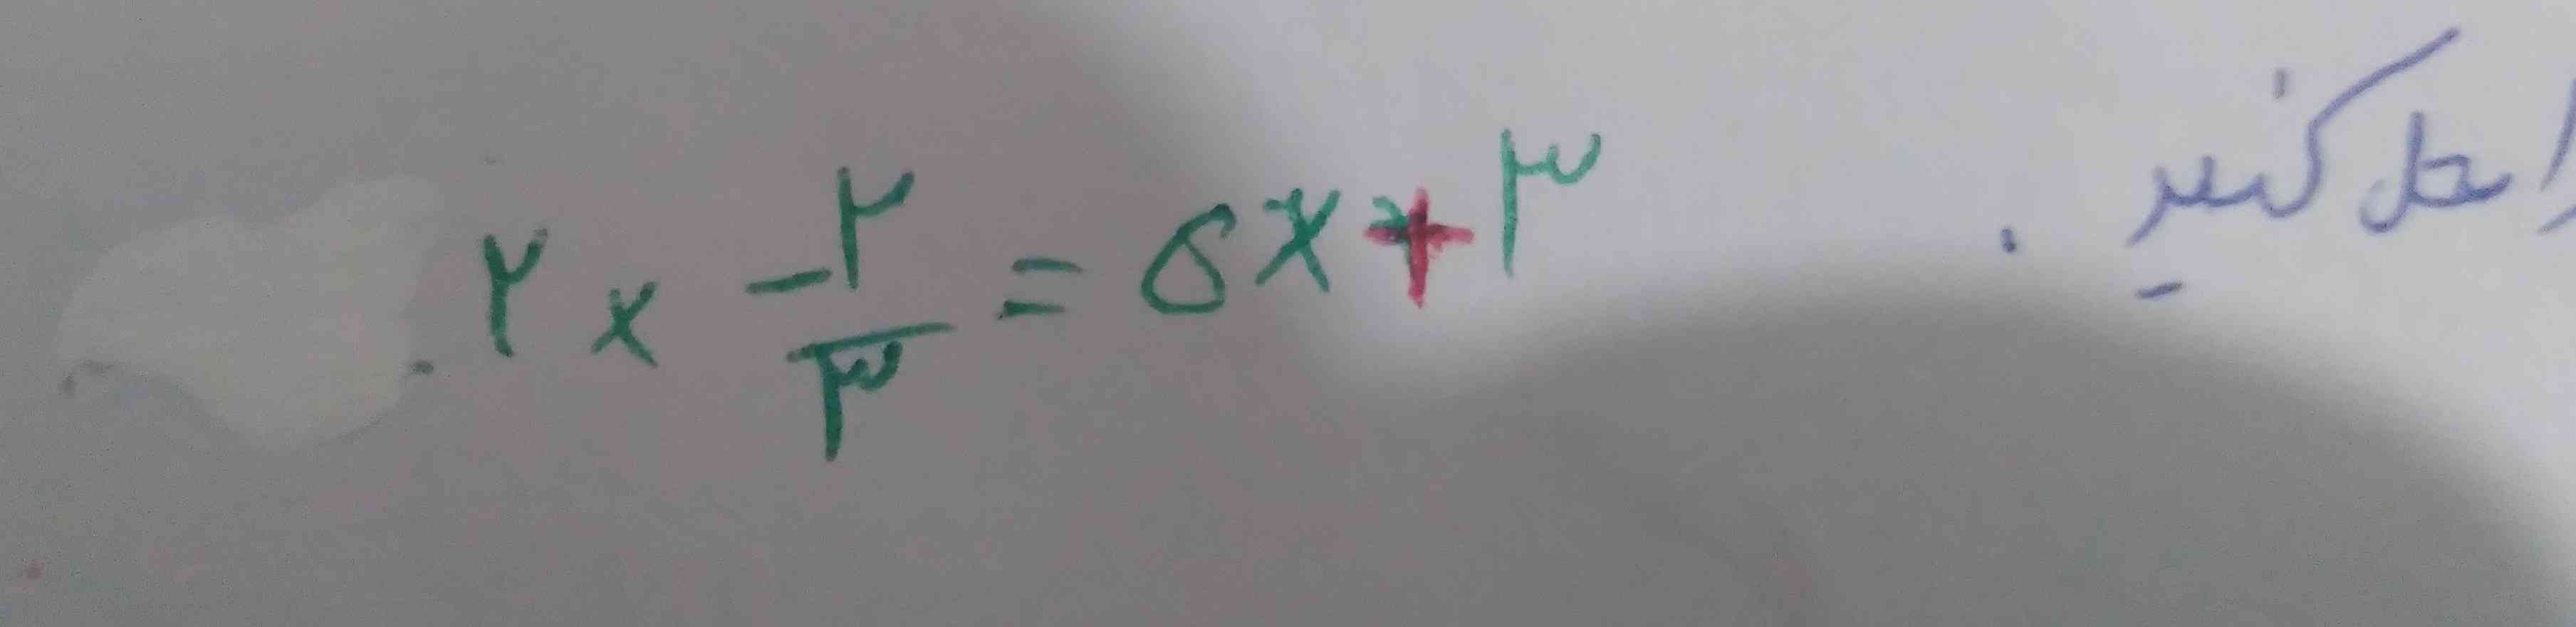 بچه ها ترو خدا این معادله رو زیر همی حل کنید 
با راه حل بفرستید